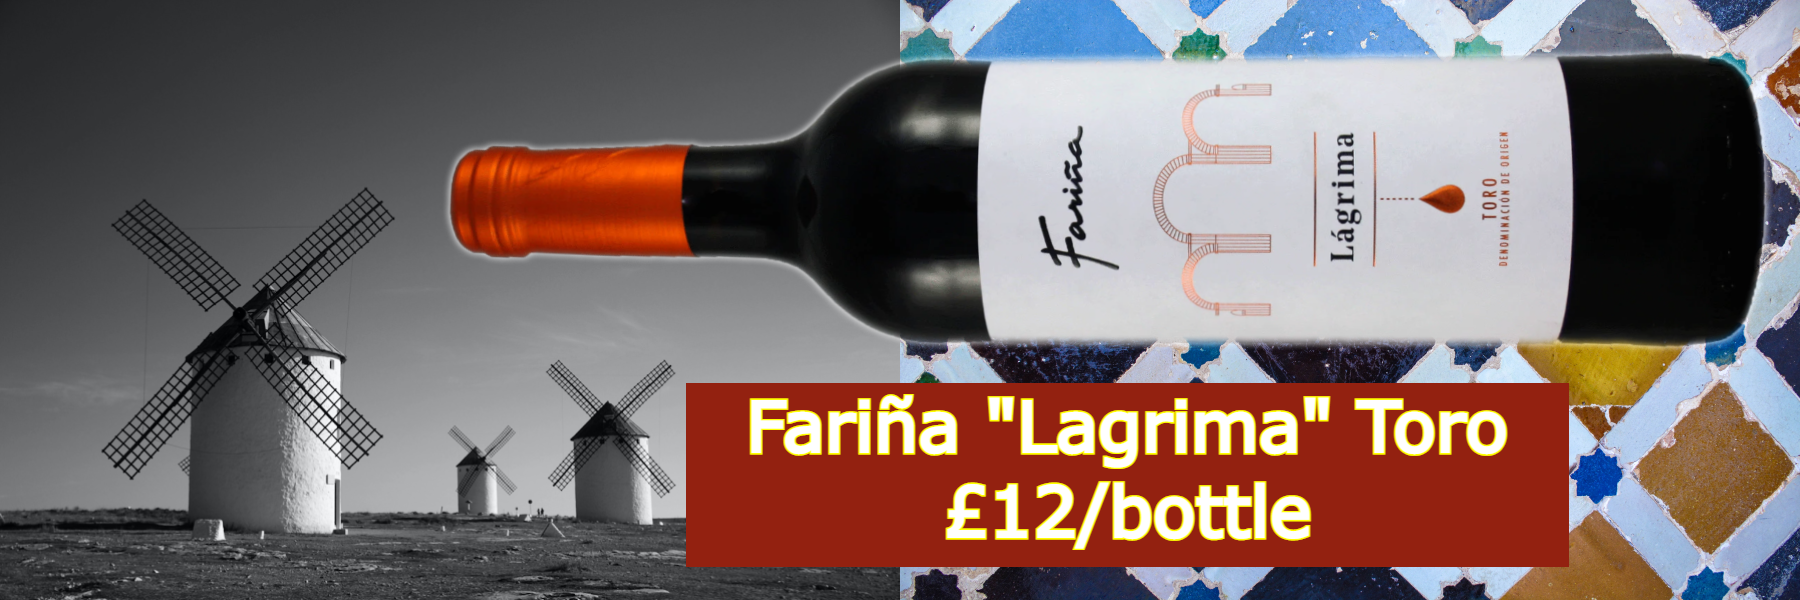 Buy Farina "Lagrima" Toro £12/bottle